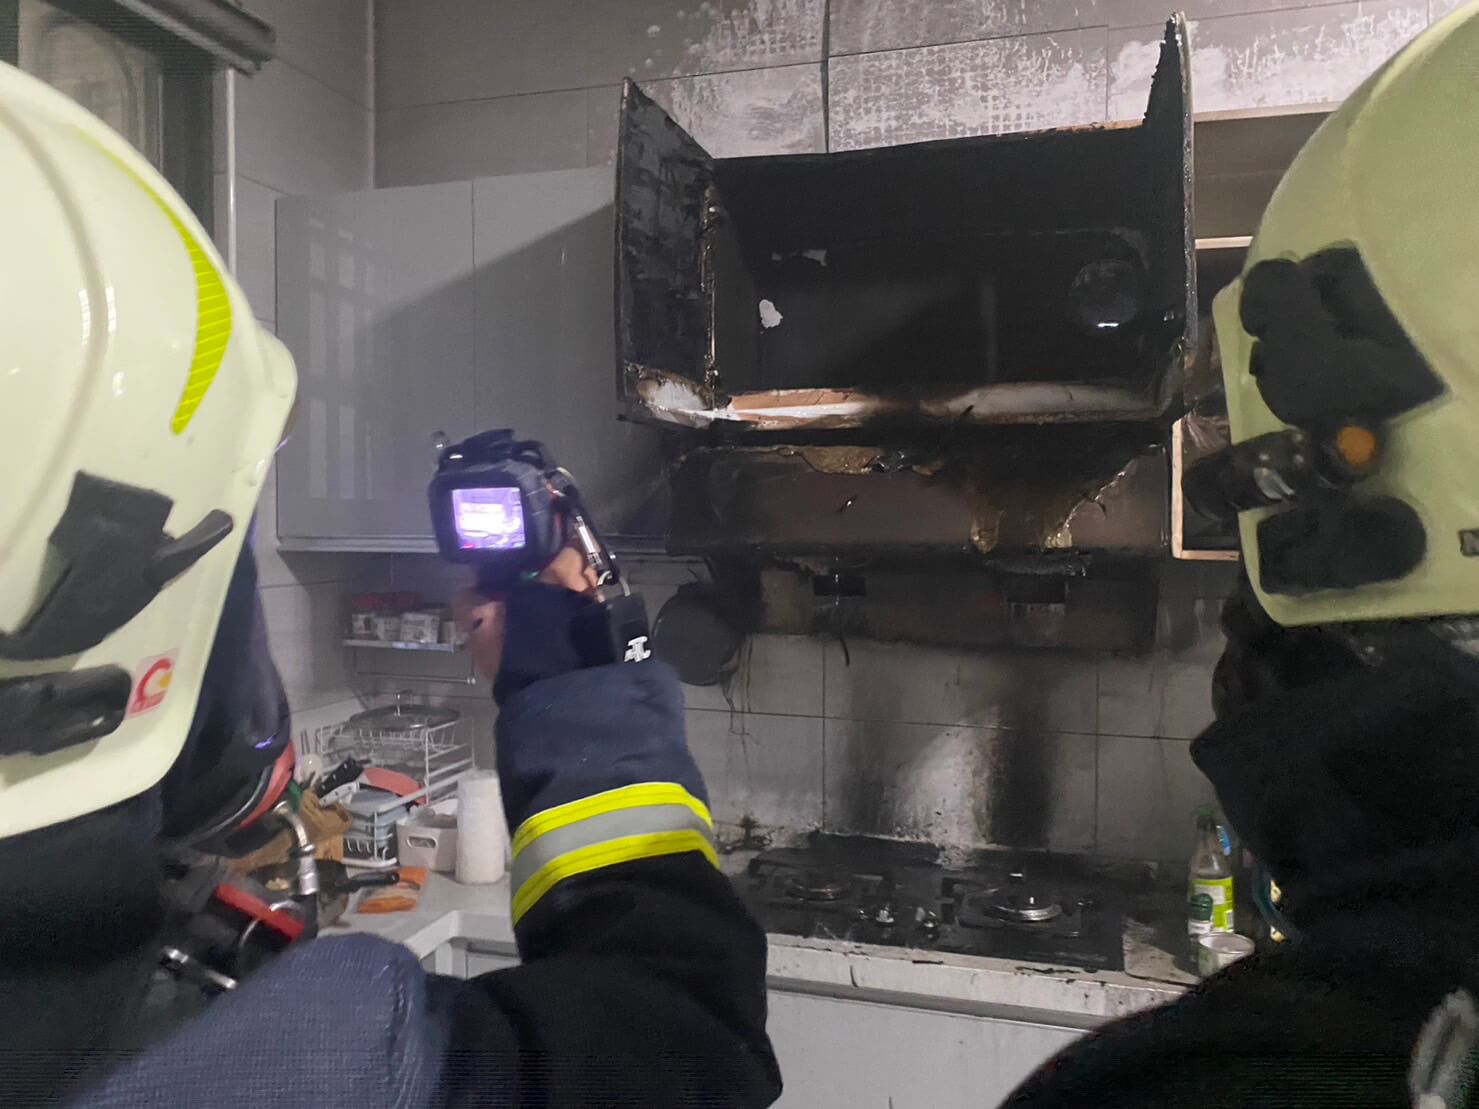 廚房竄出濃煙住宅火災警報器作響 消防救援